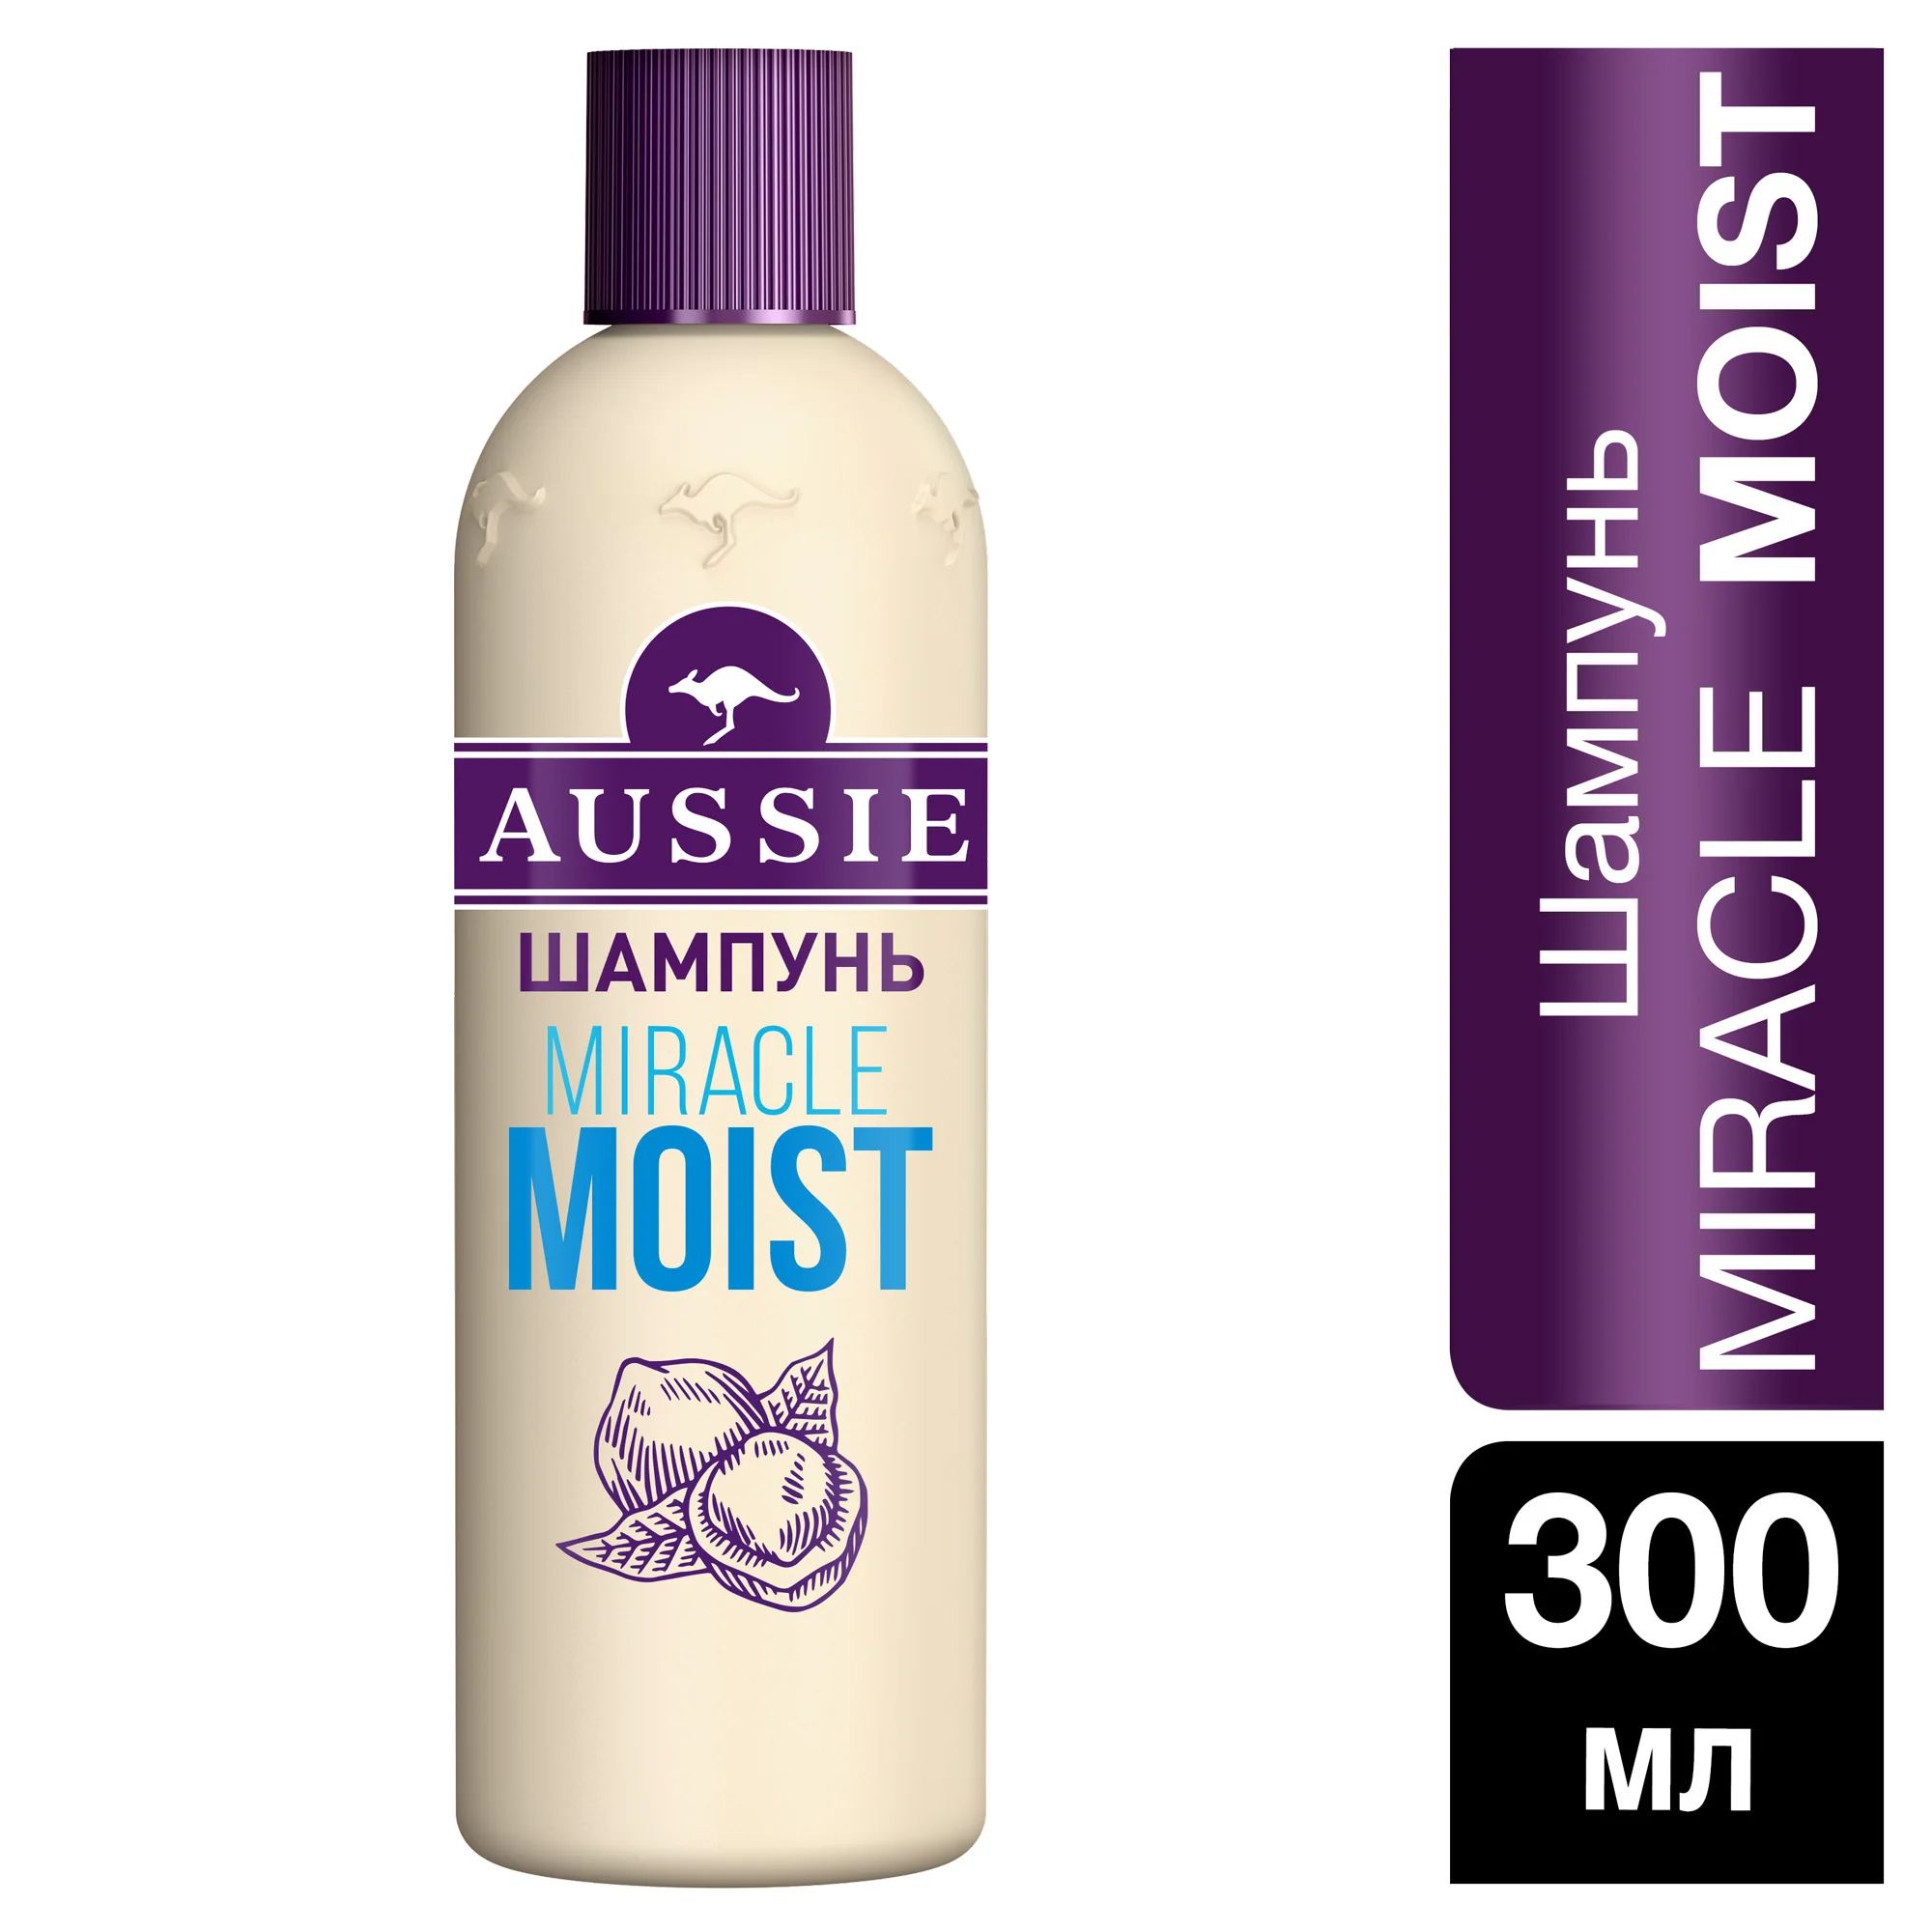 Aussie shampoo reddit